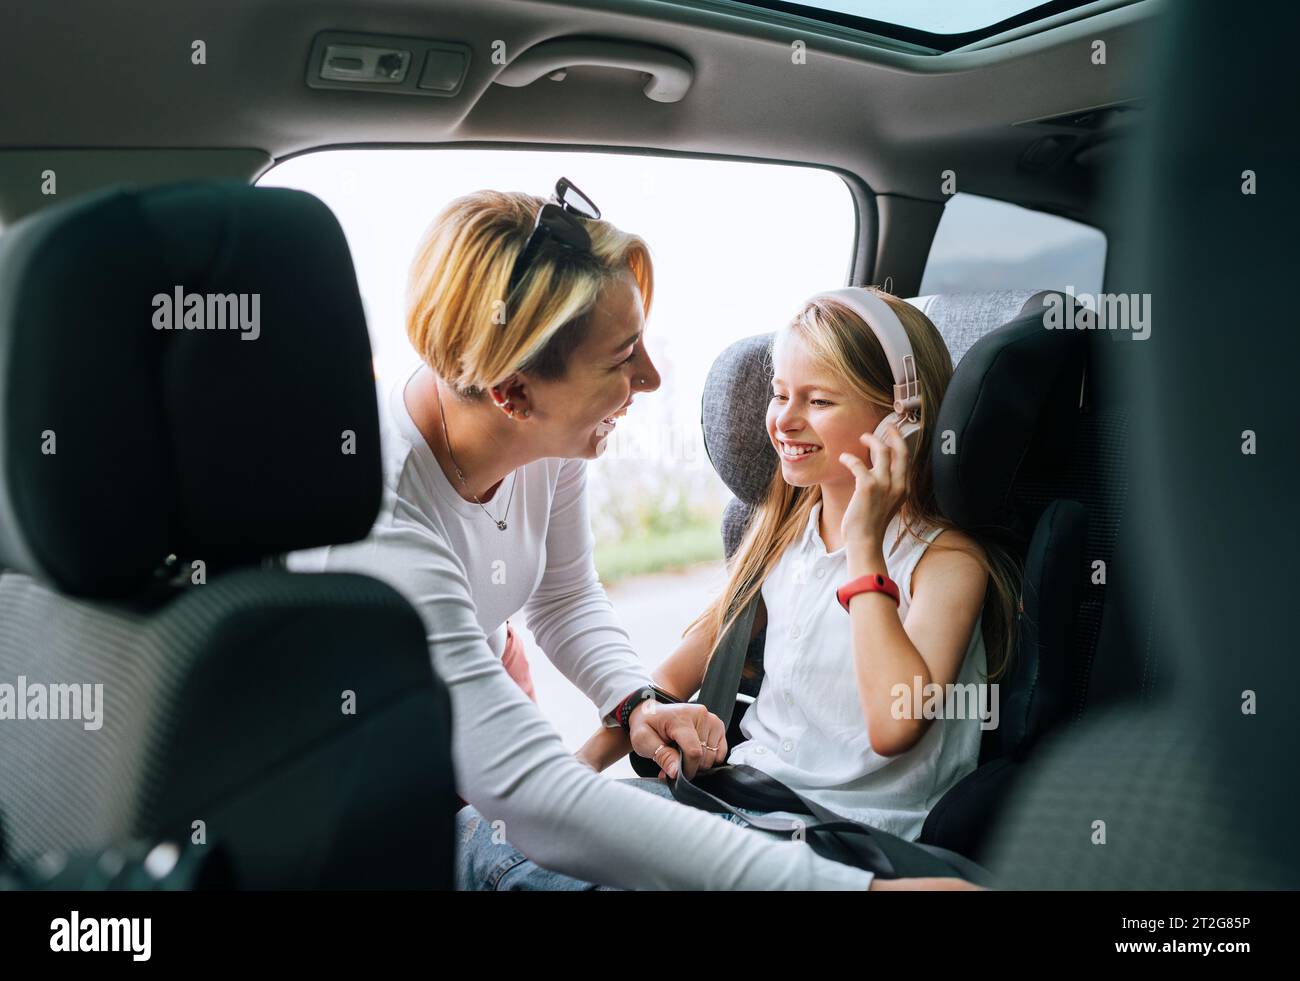 À l'intérieur de la photo de voiture d'une mère fixant avec la ceinture de sécurité automatique sa petite fille assise dans le siège d'enfant. Fille écoutant de la musique à l'aide d'écouteurs Banque D'Images